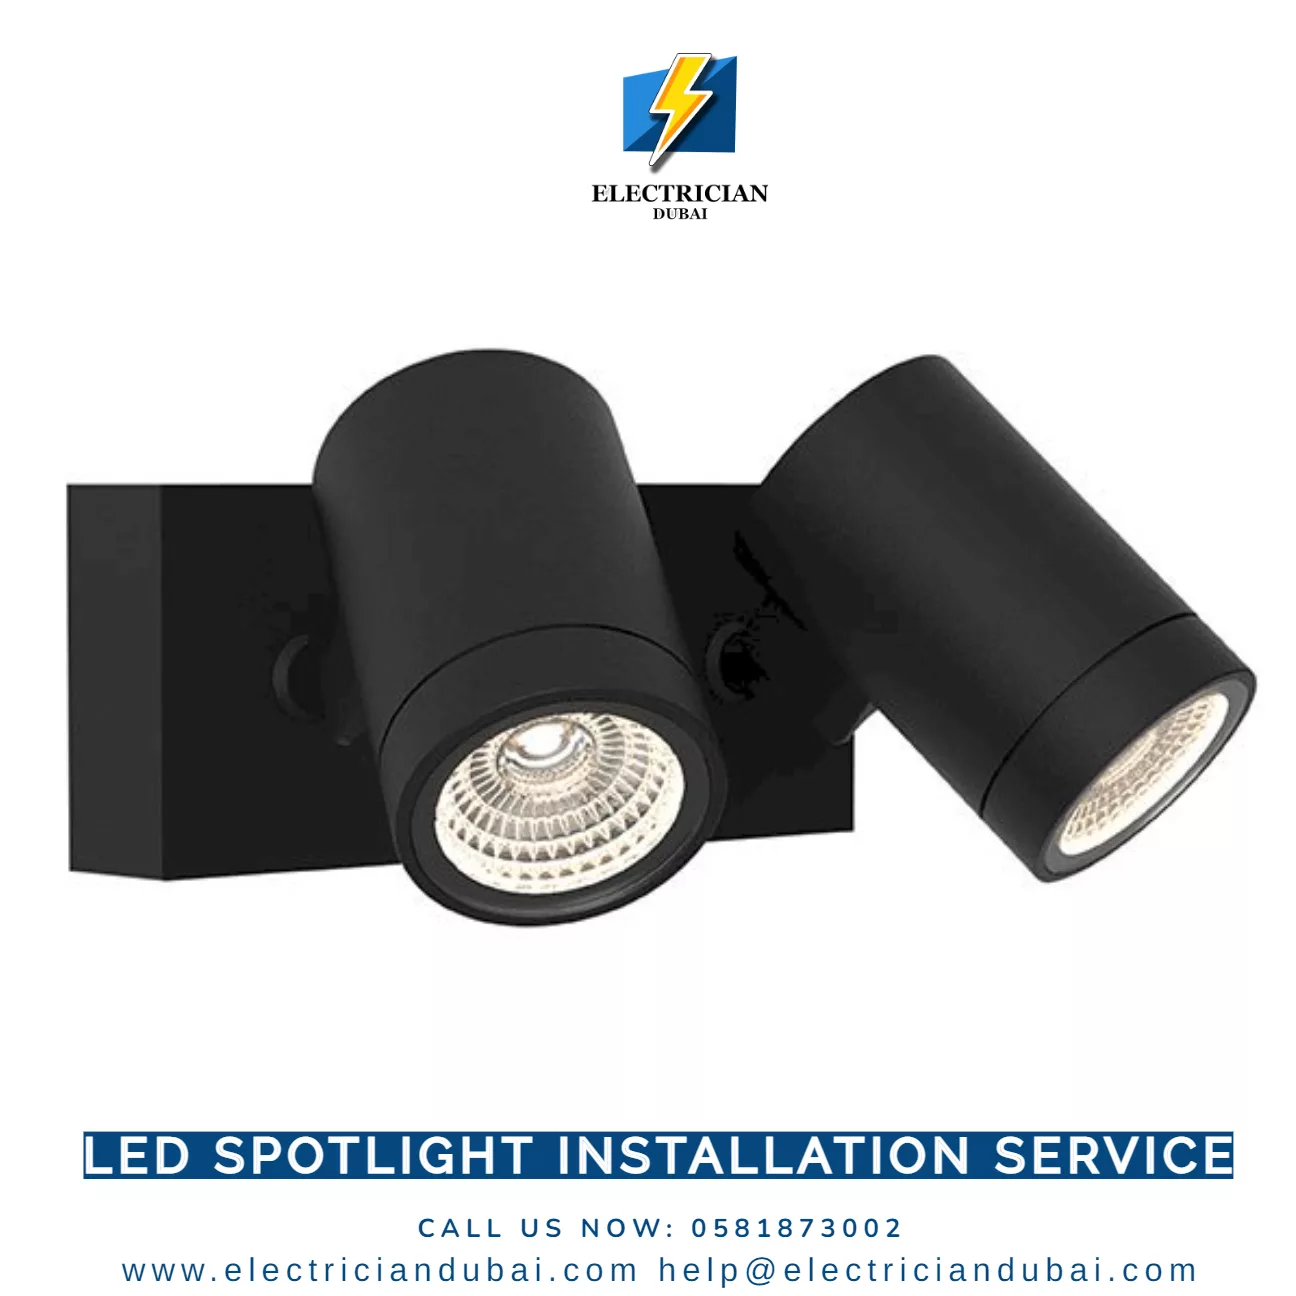 LED Spotlight Installation Service